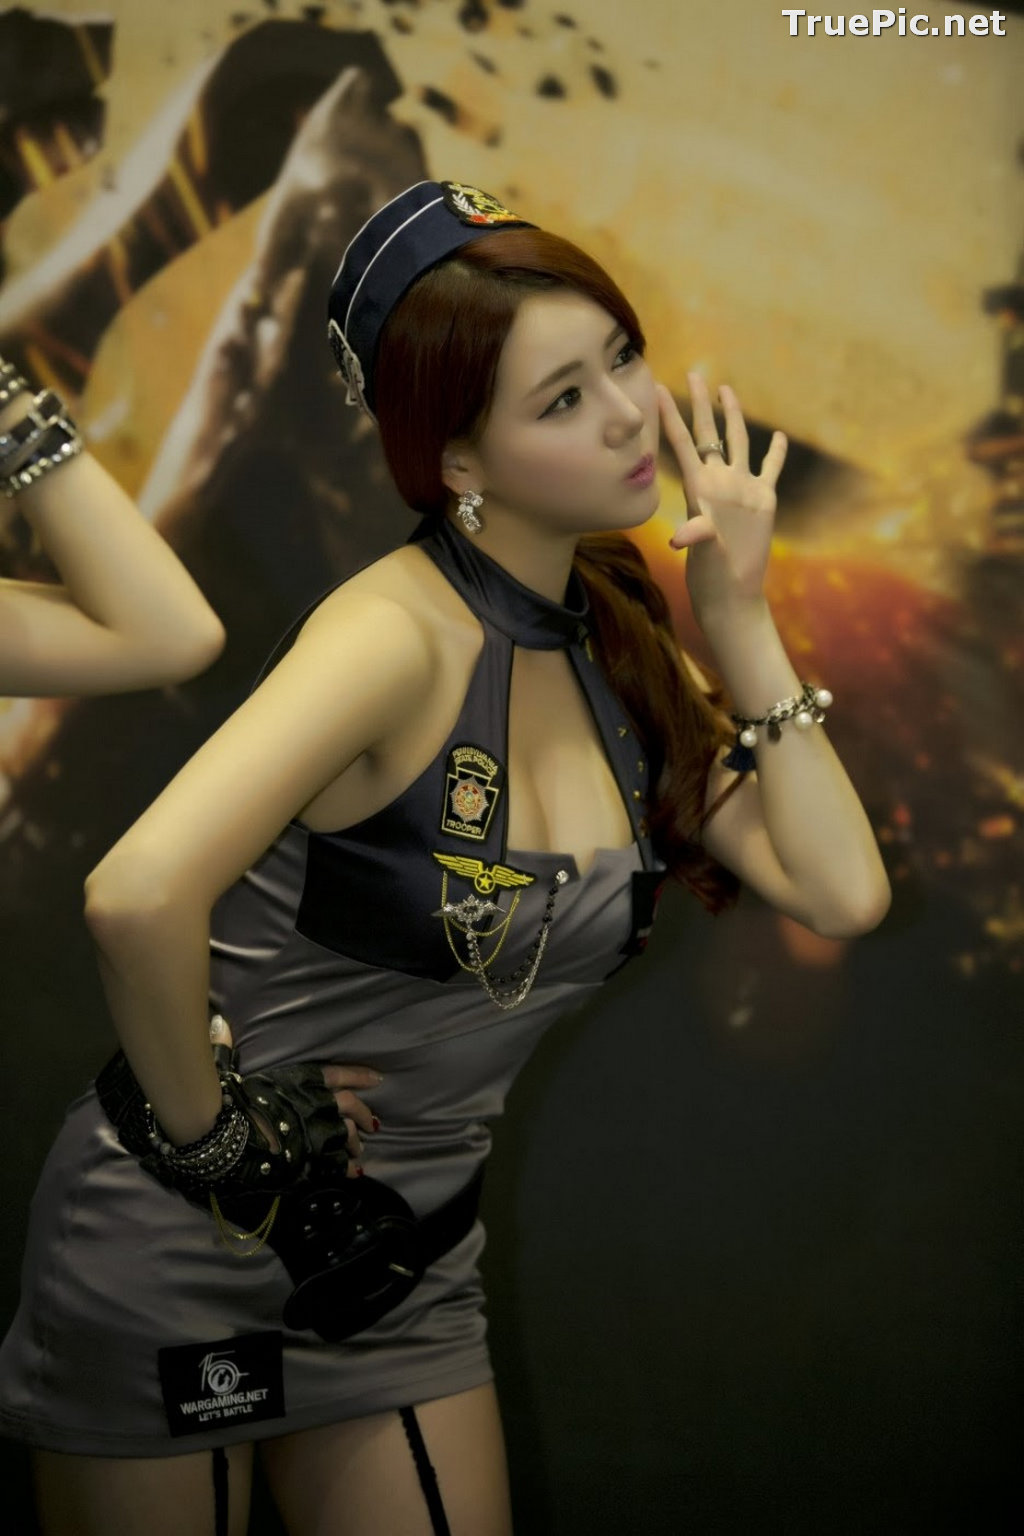 Image Best Beautiful Images Of Korean Racing Queen Han Ga Eun #1 - TruePic.net - Picture-21